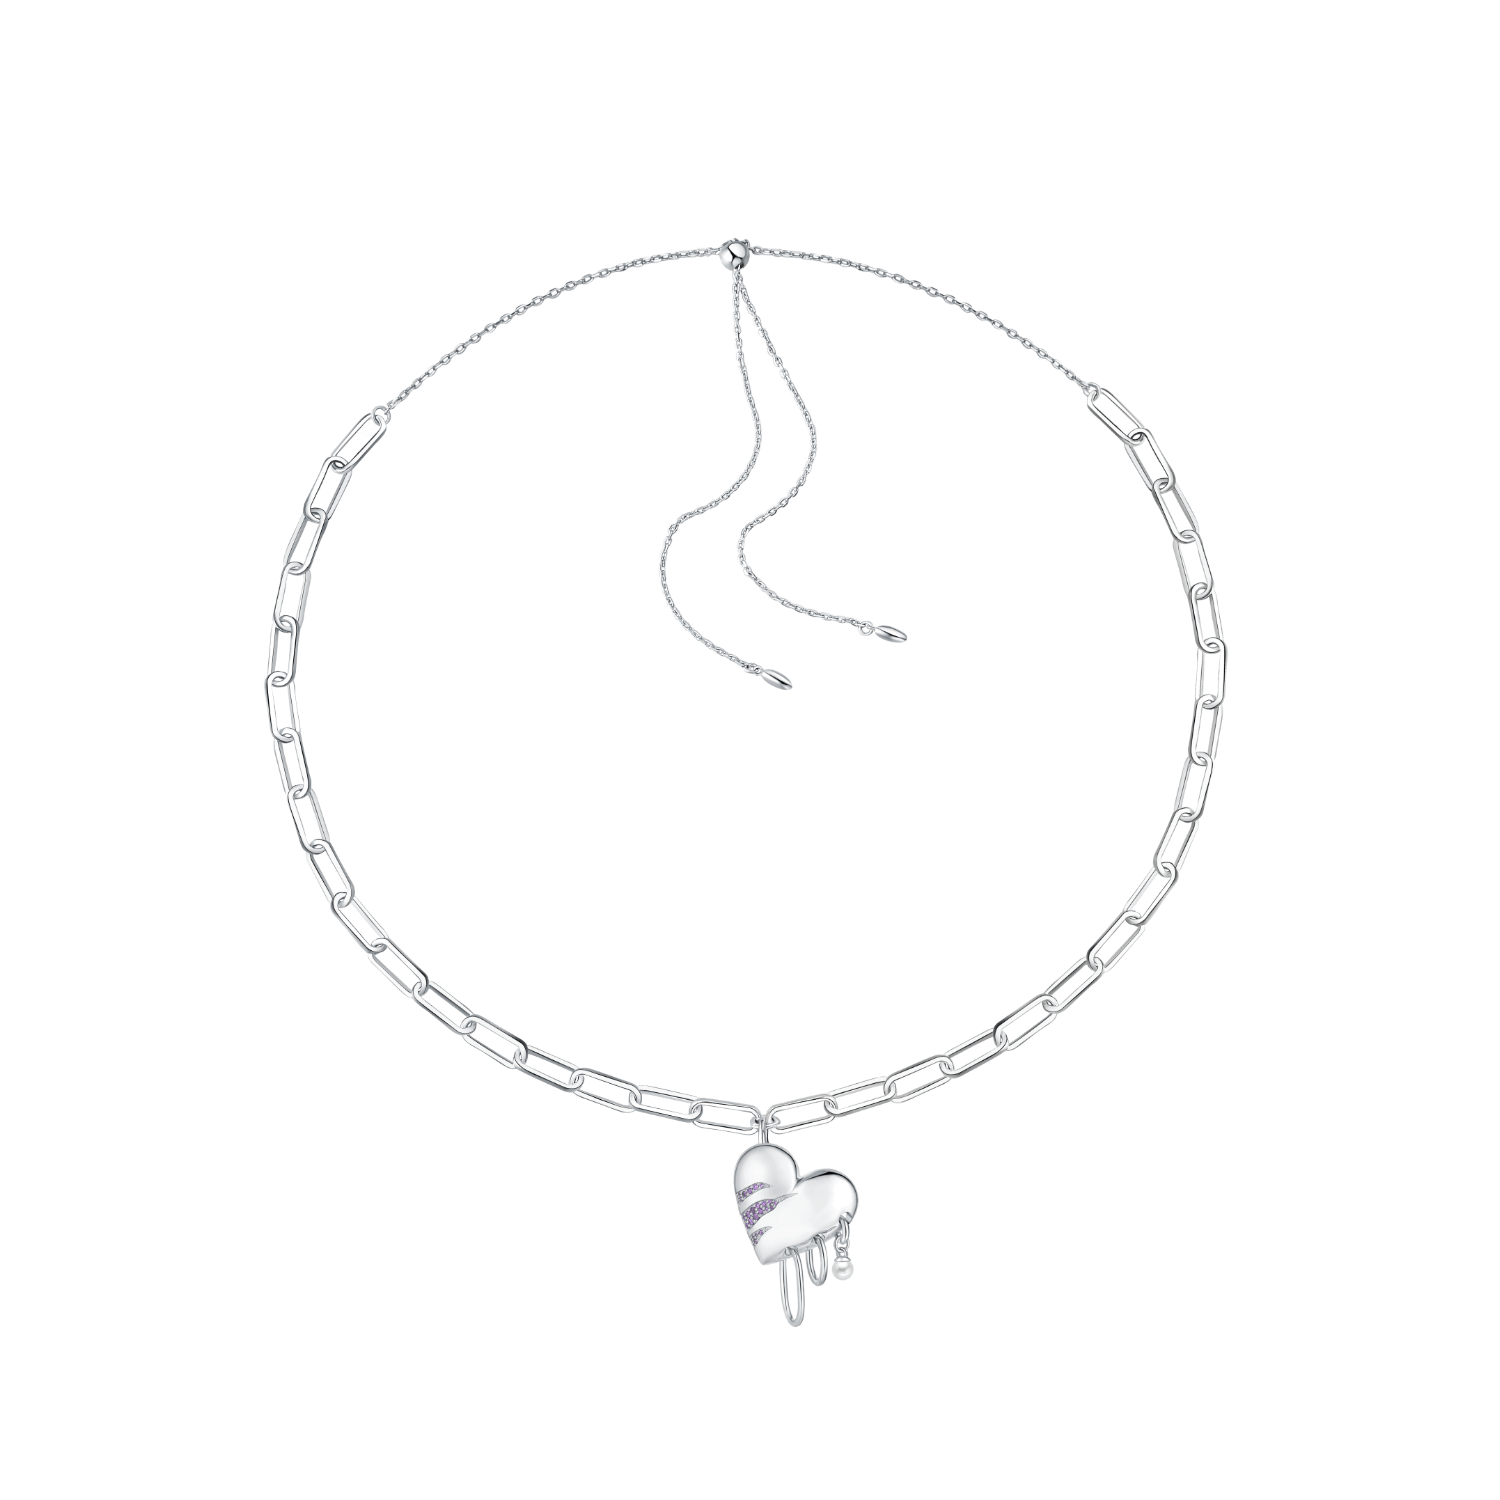 Rebellion Chain Necklace